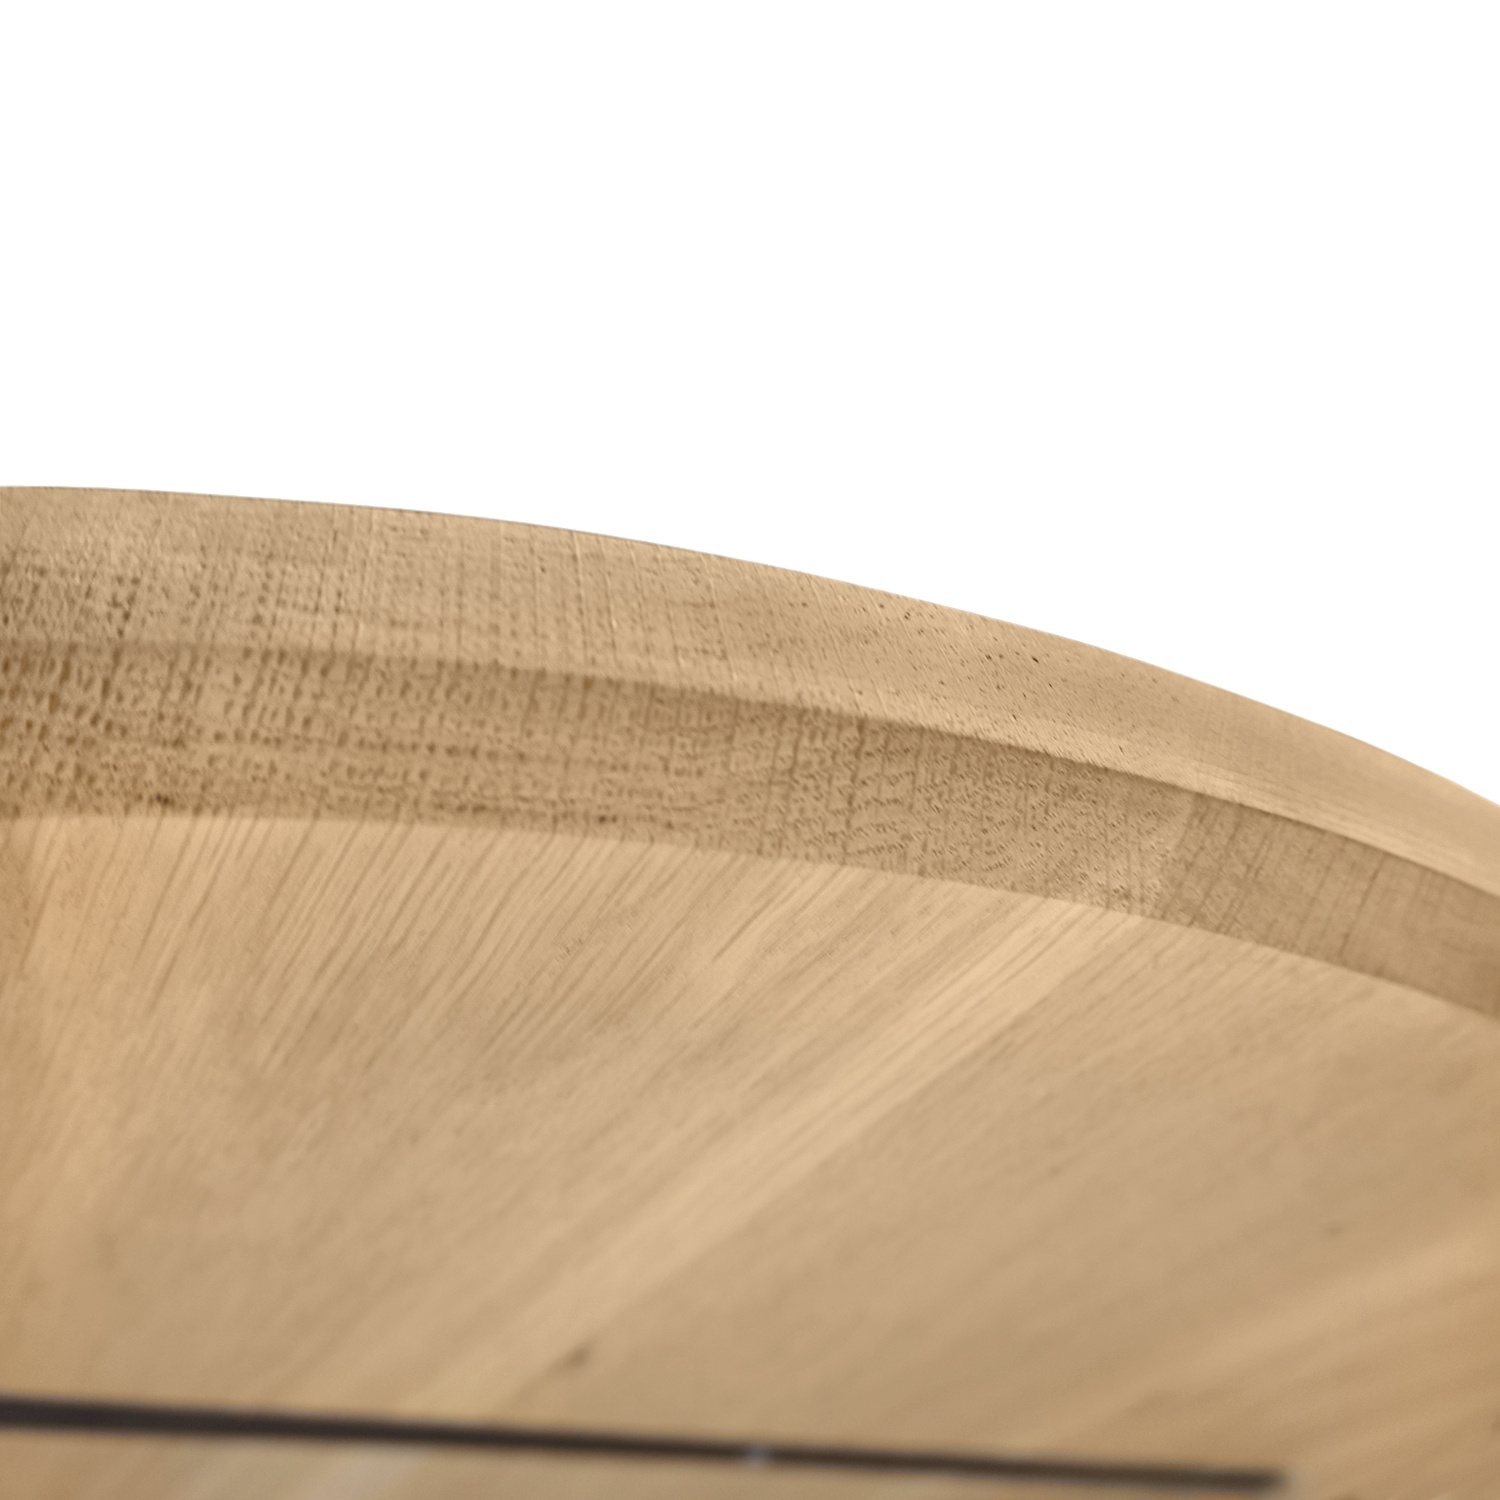  Eiken tafelblad rond - 2,5 cm dik (1-laag) - Diverse afmetingen - optioneel geborsteld - extra rustiek Europees eikenhout - met extra brede lamellen (circa 14-20 cm) - verlijmd kd 10-12%